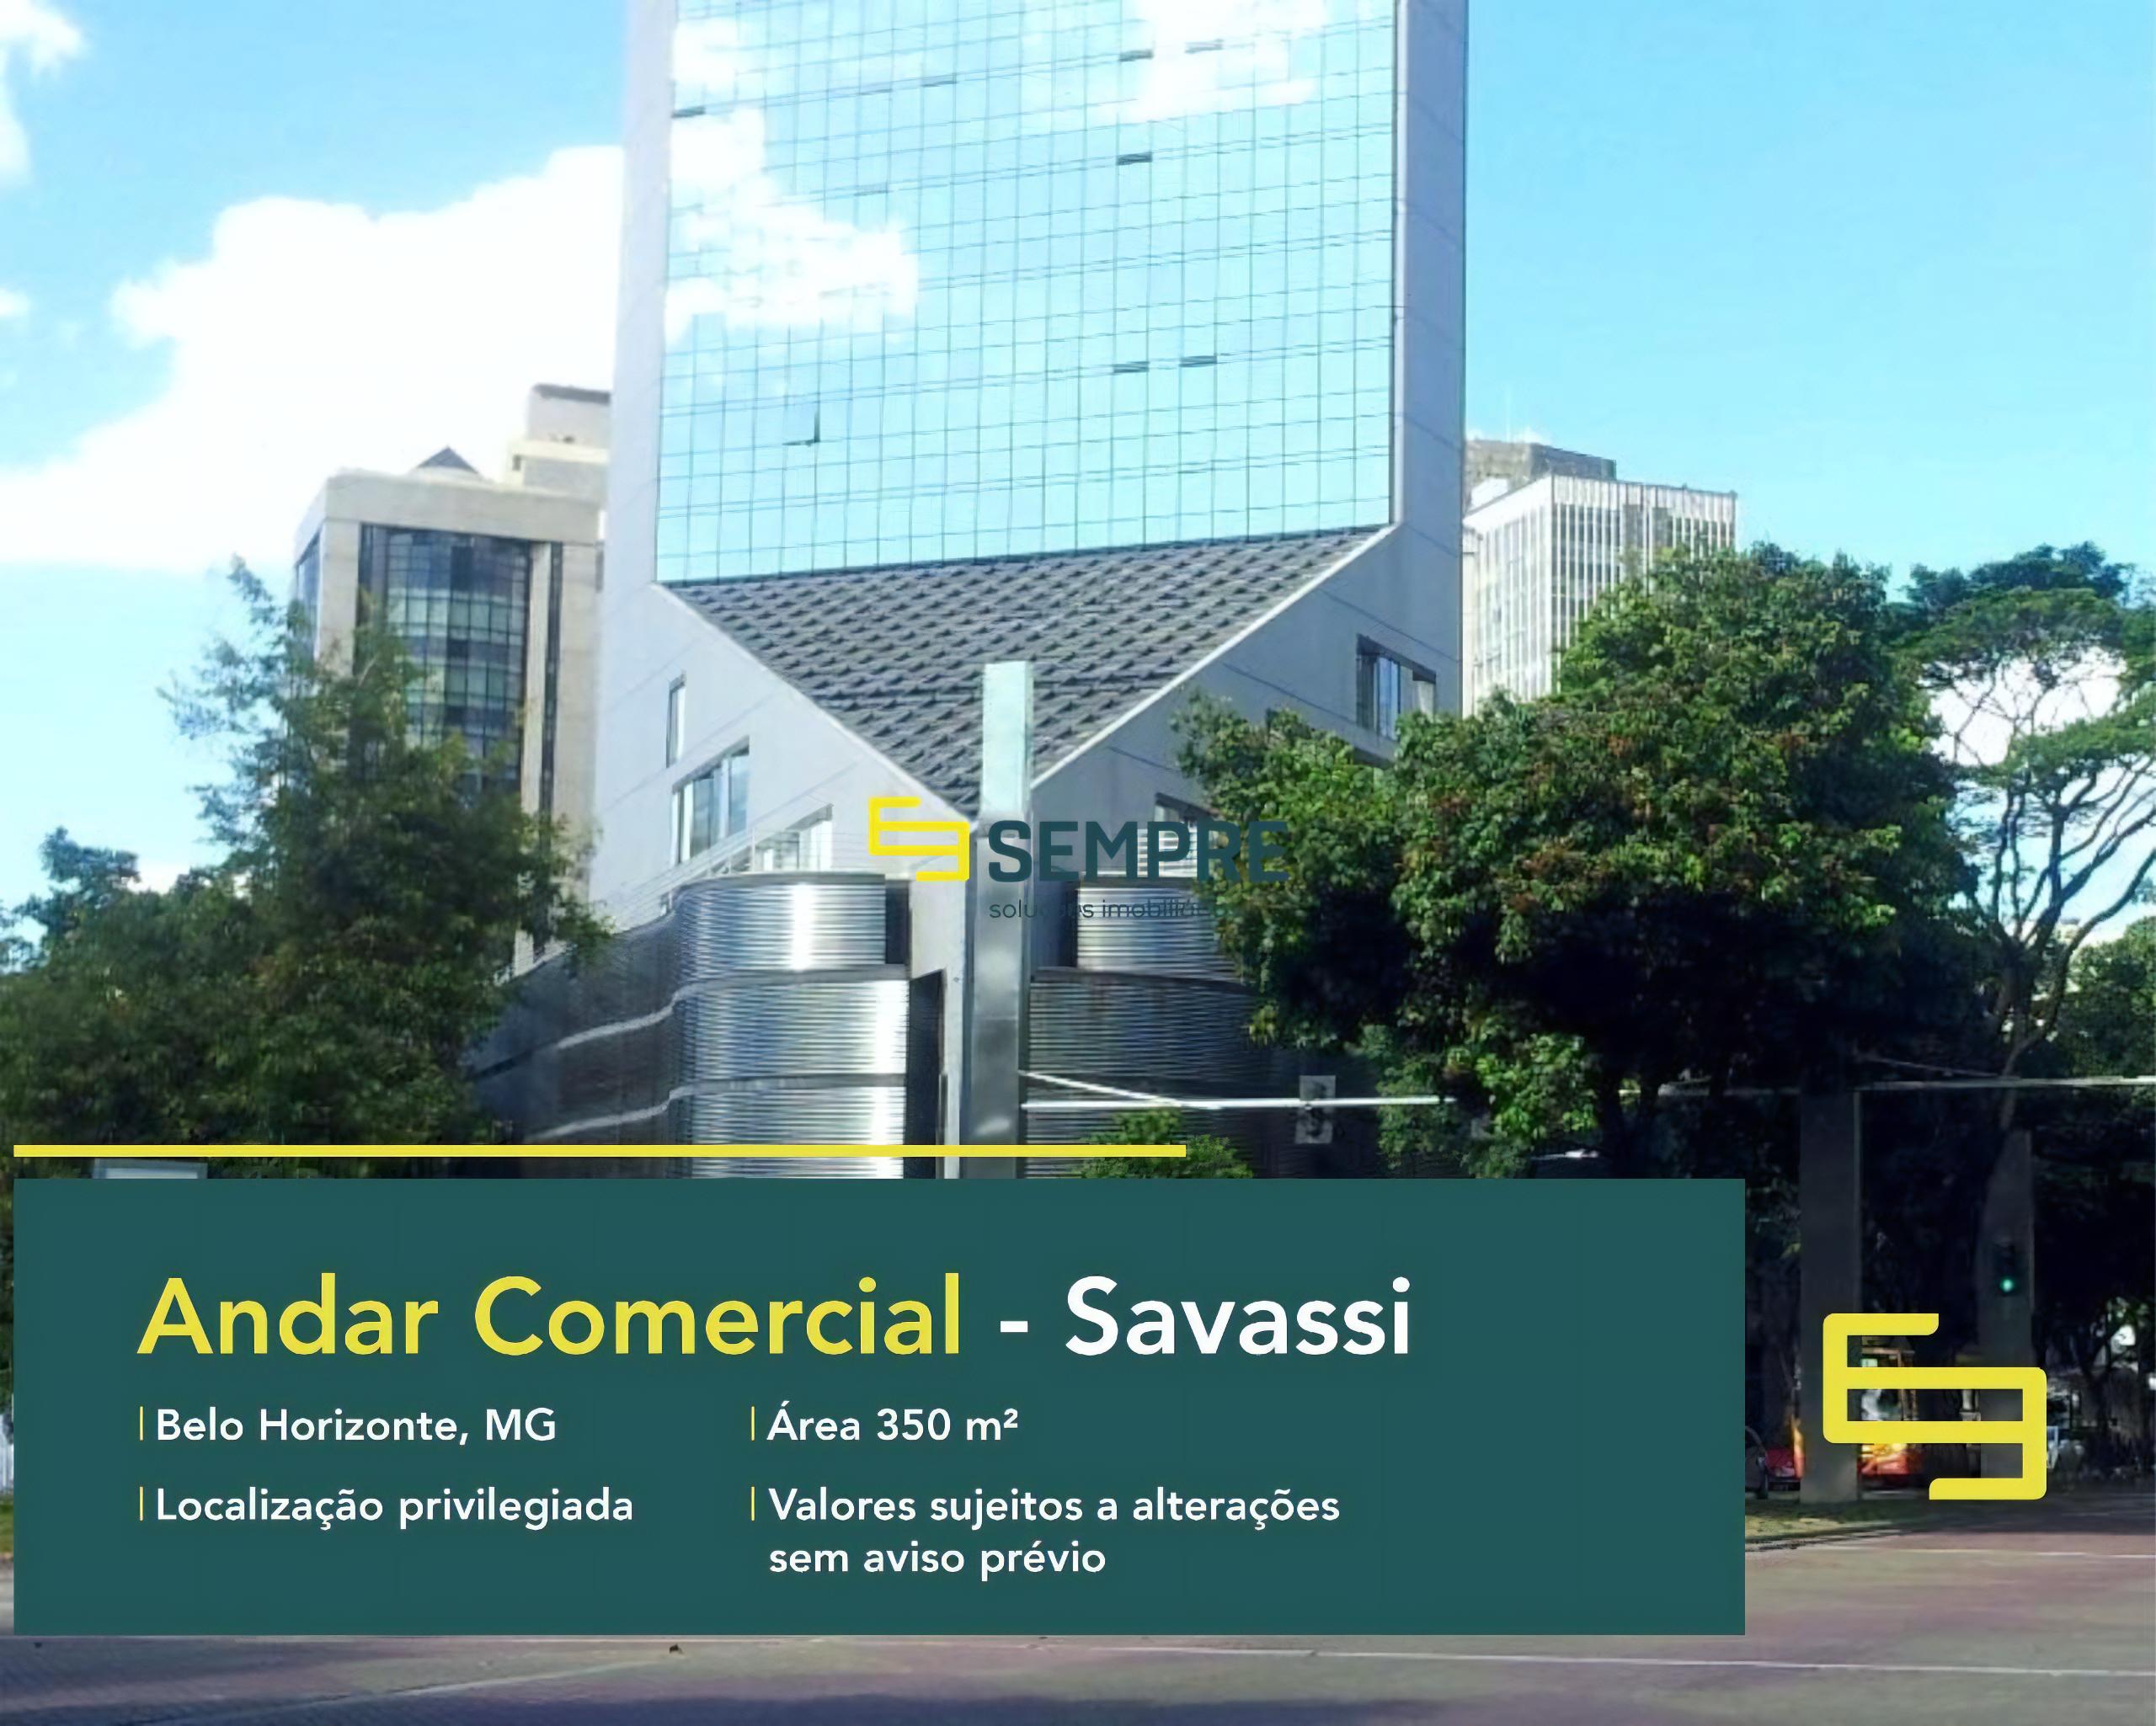 Andar comercial para alugar em Belo Horizonte - Edifício Tenco, excelente localização. O estabelecimento comercial conta com área de 350 m².